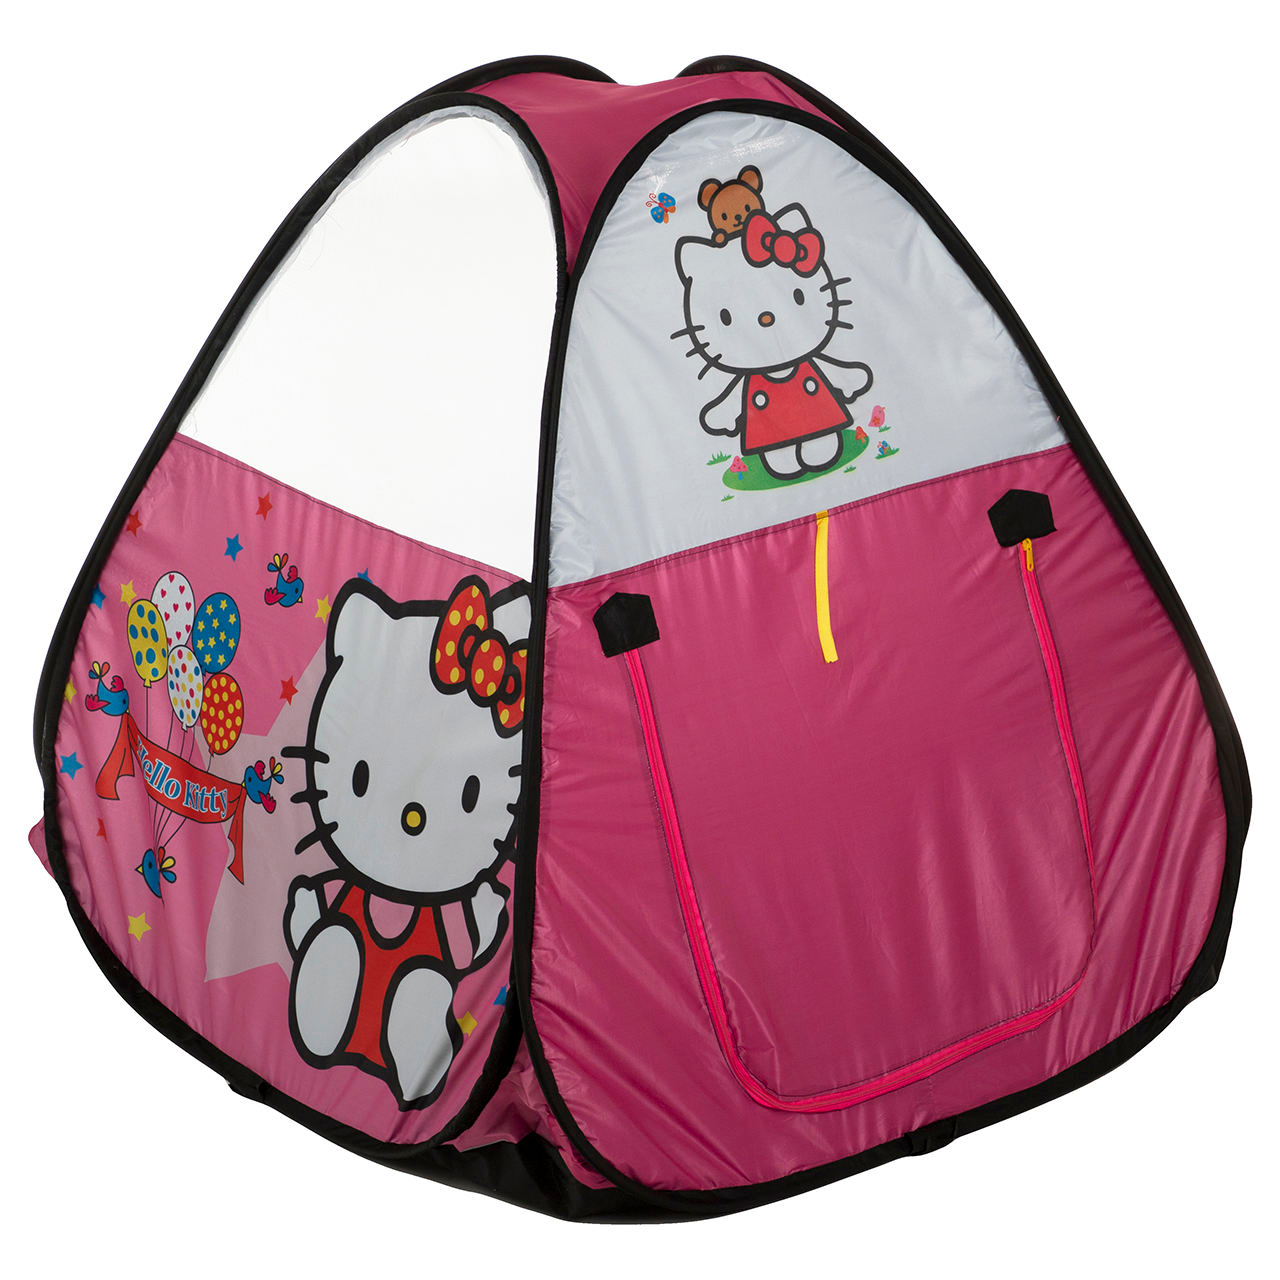 چادر بازی کودک برند نامشخص-- چادر کودک مدل Hello Kitty - صورتی - طرح کیتی - دخترونه